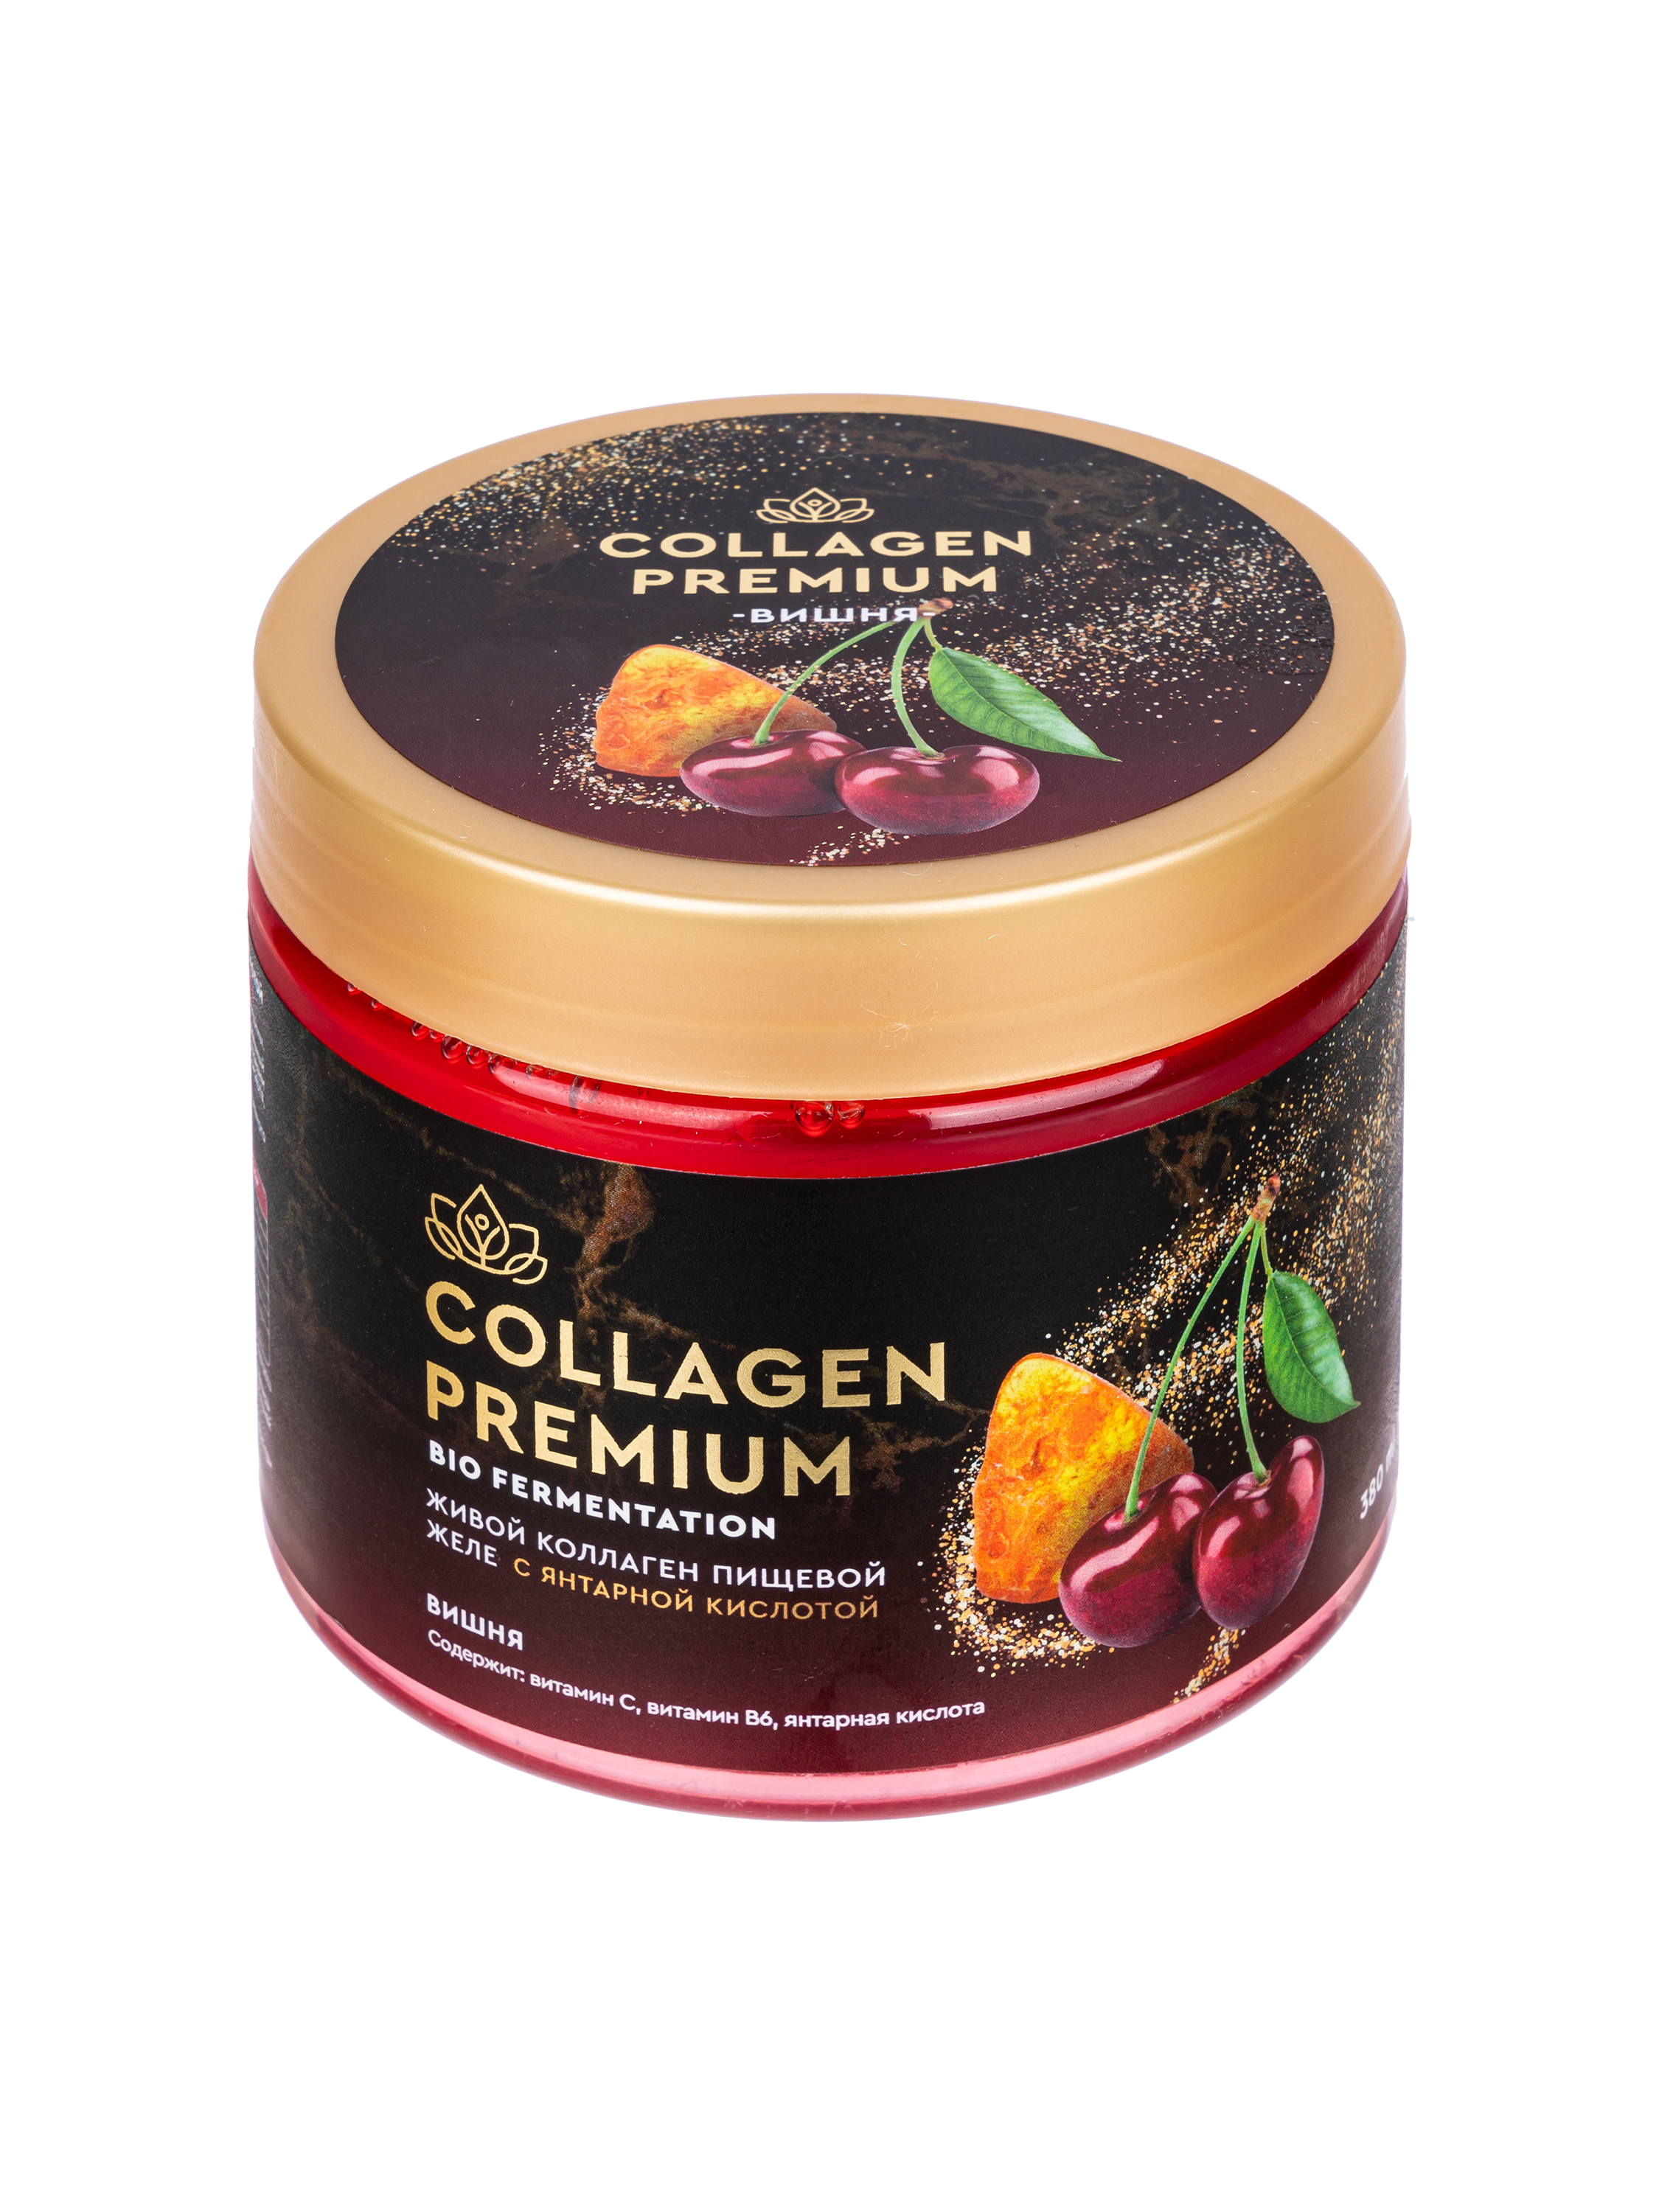 Collagen-premium c Янтарной кислотой и соком вишни 380 мл